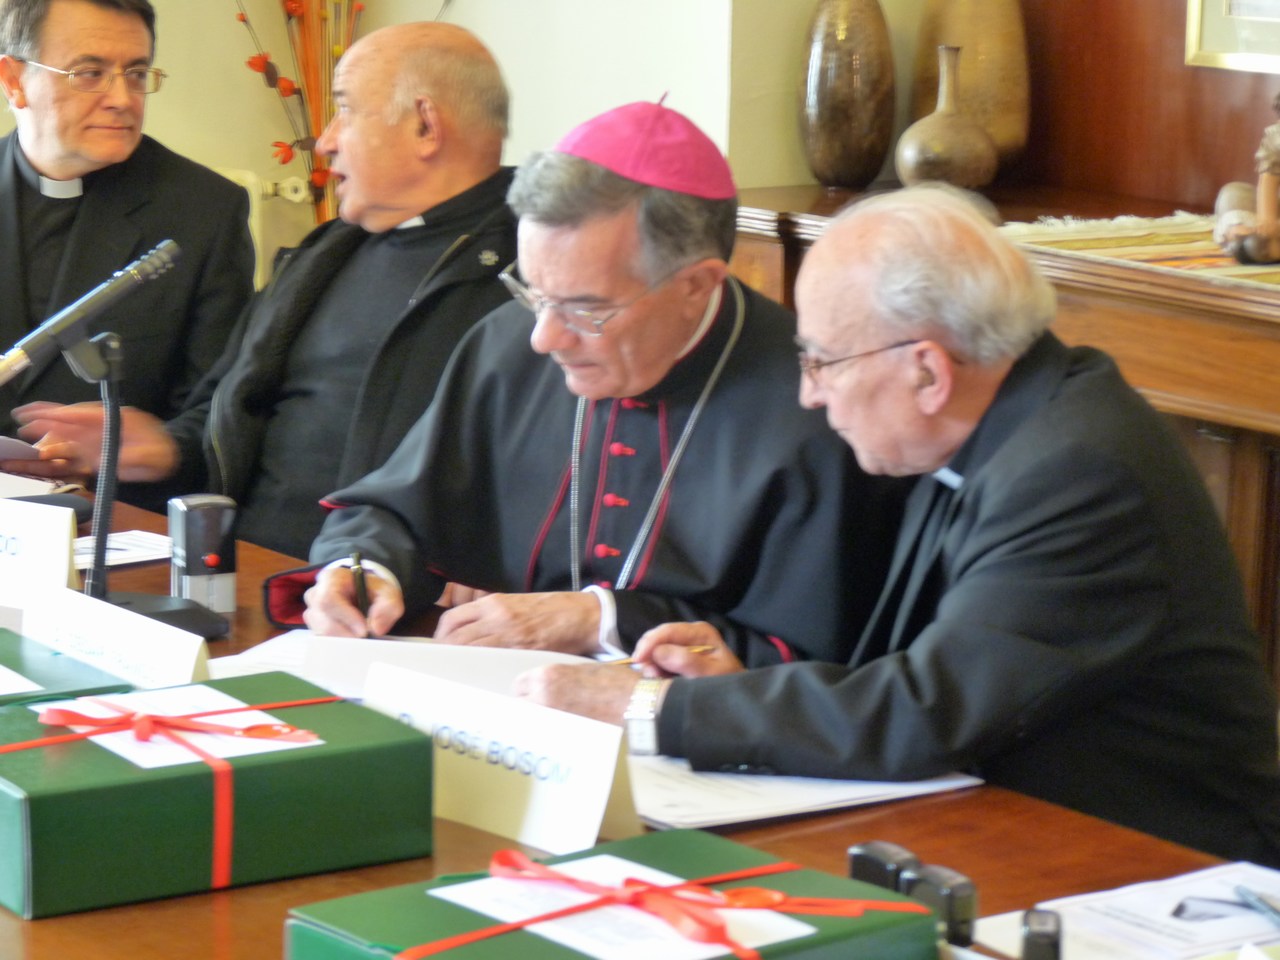 El obispo firmando uno de los documentos del proceso. Pulse para verla a mayor tamaño